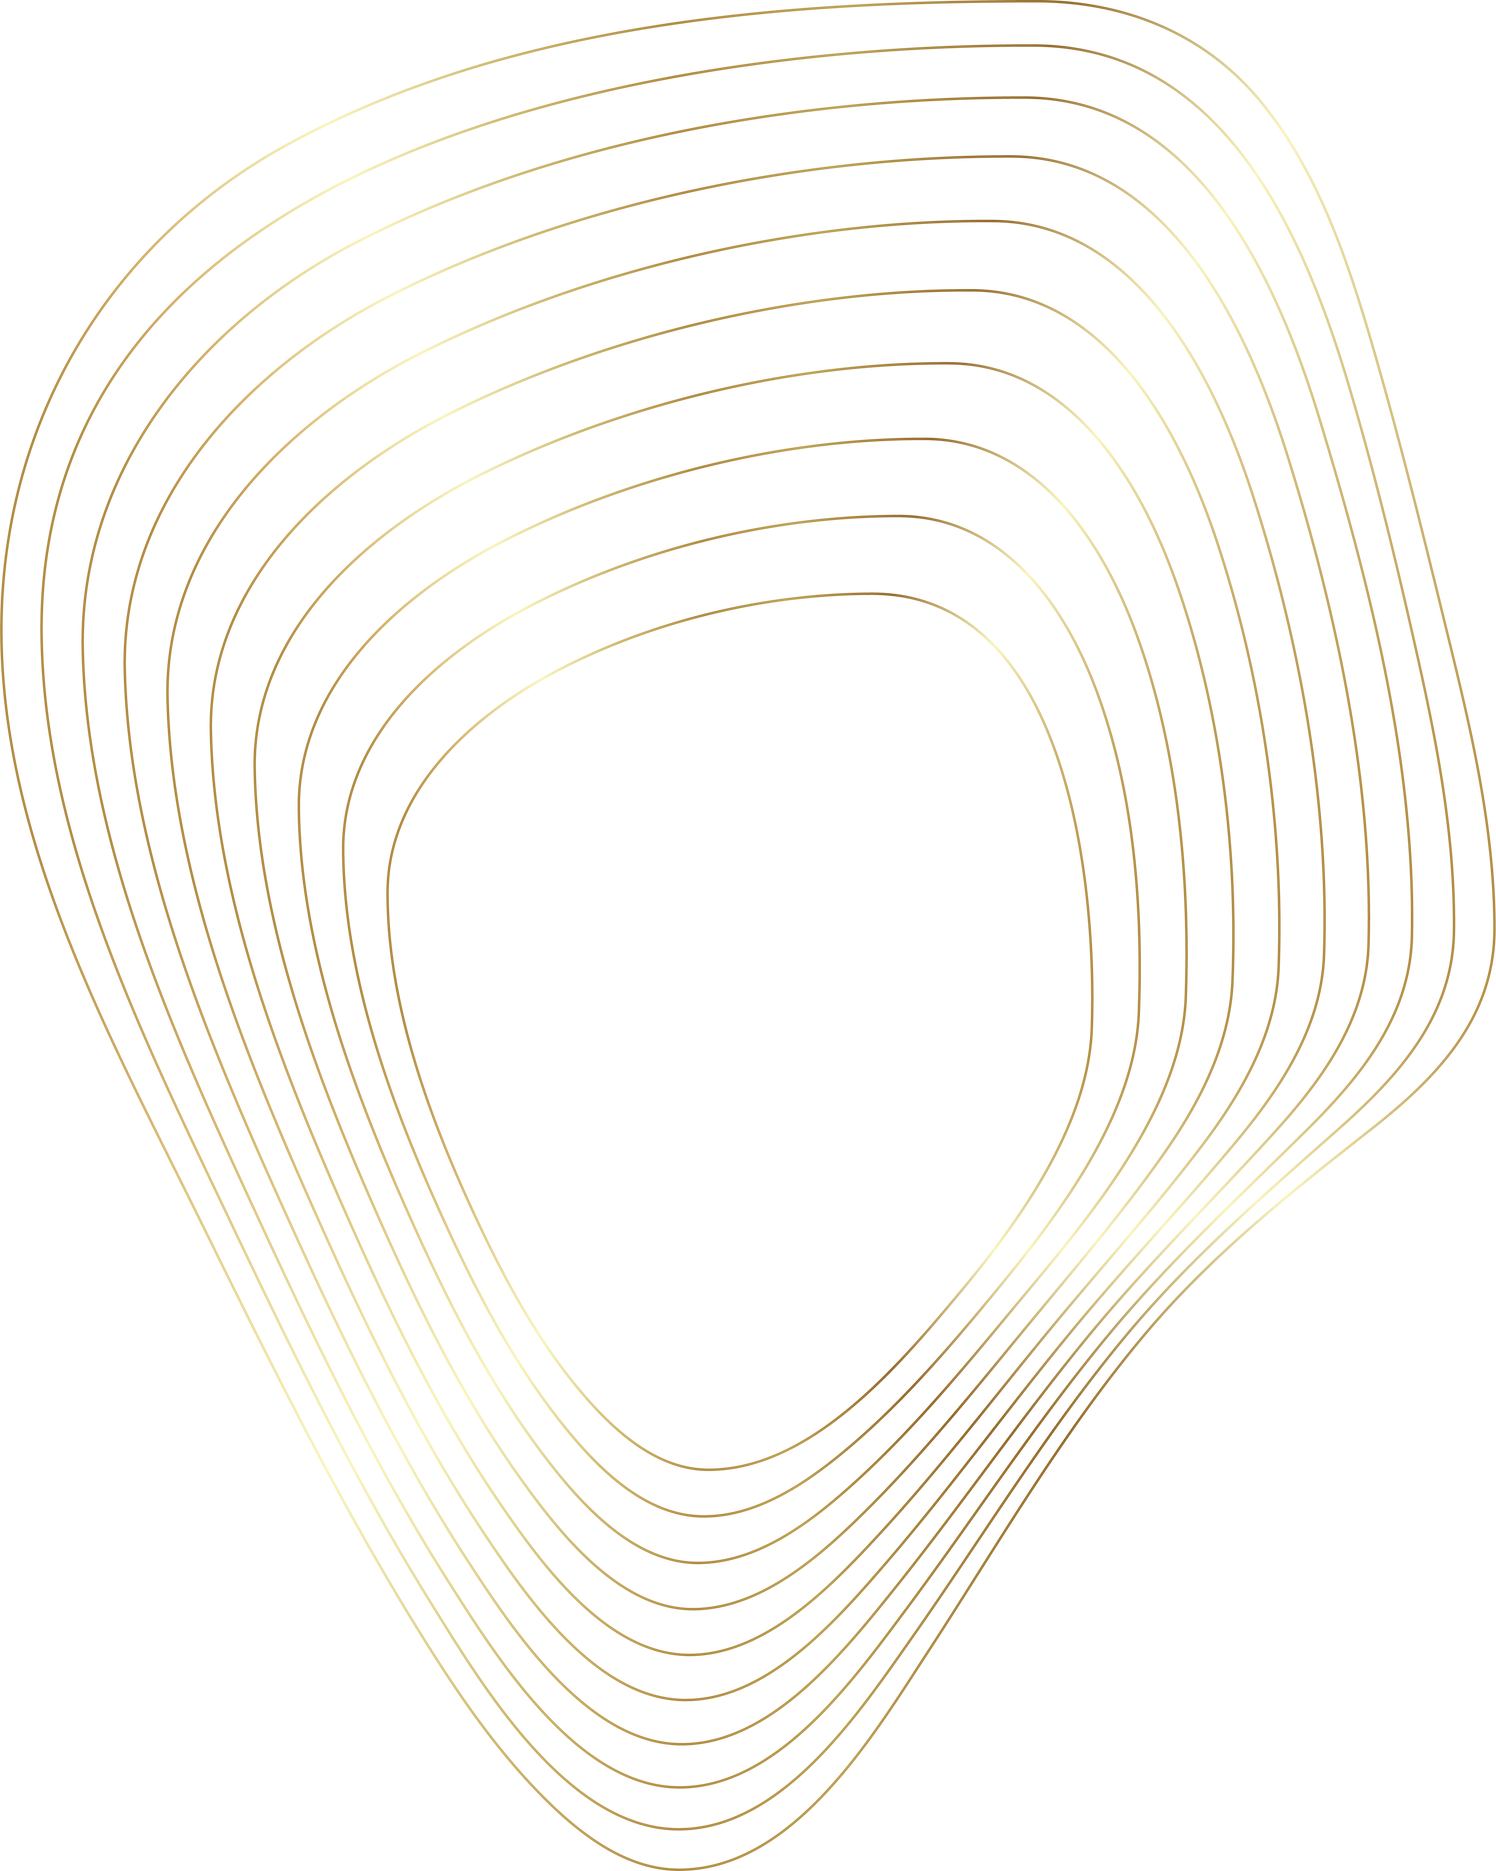 Gold liquid geometric shapes. Graphic elements